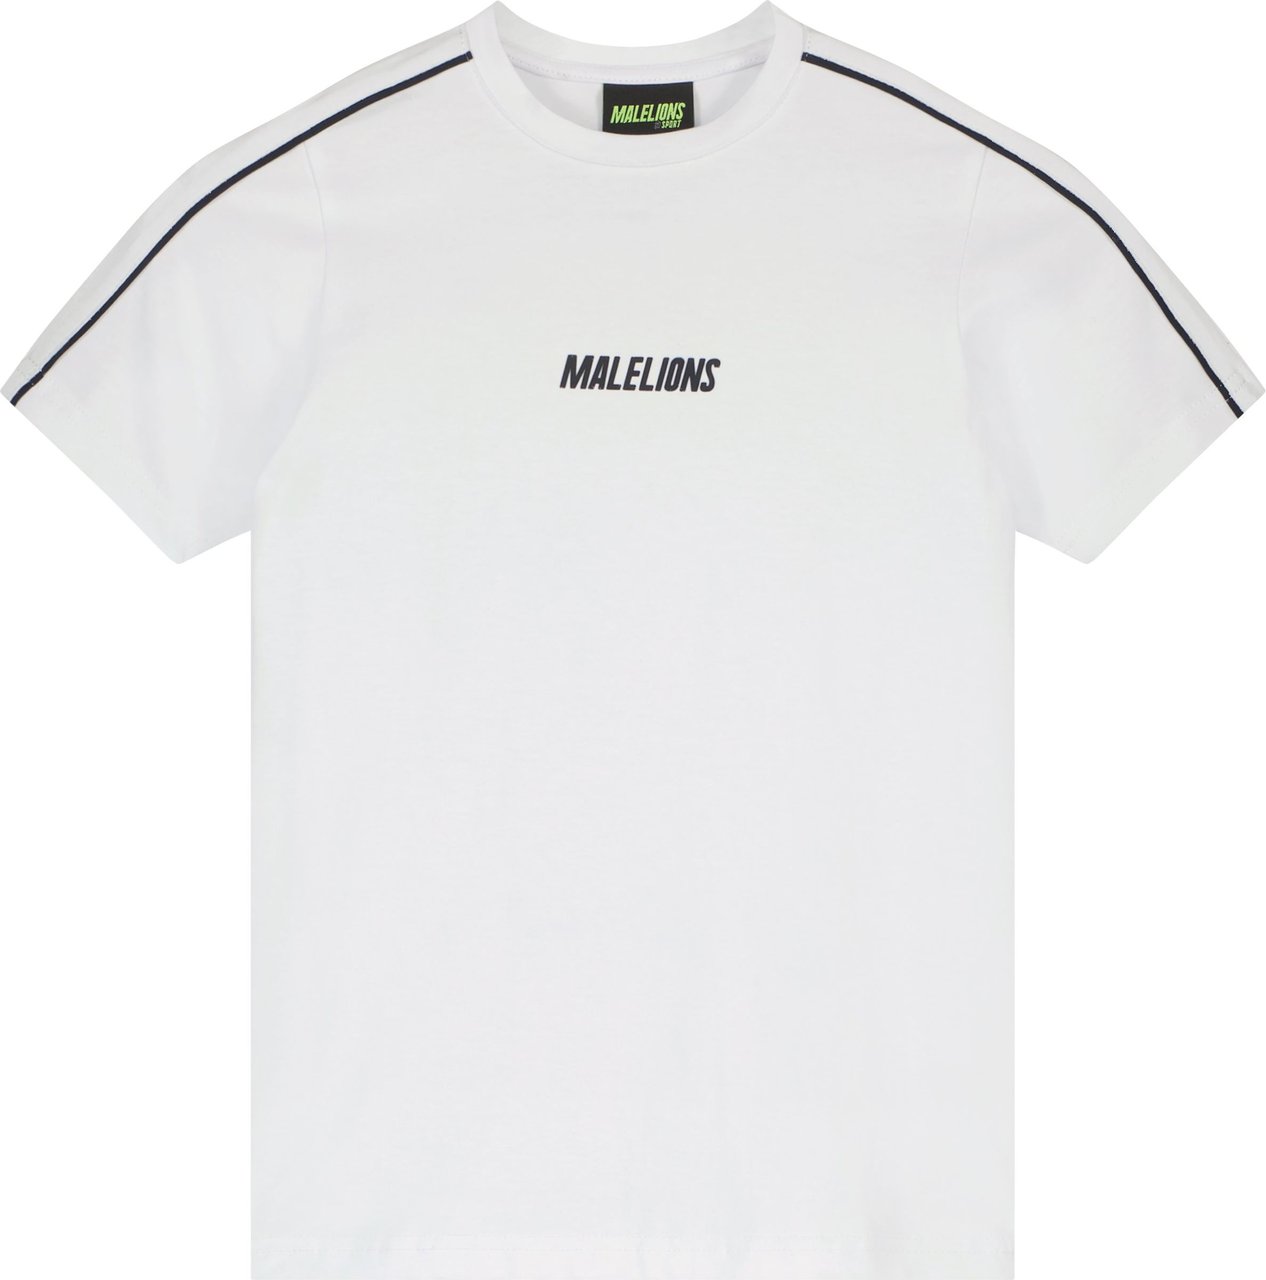 Malelions Coach T-Shirt- Navy/White Blauw